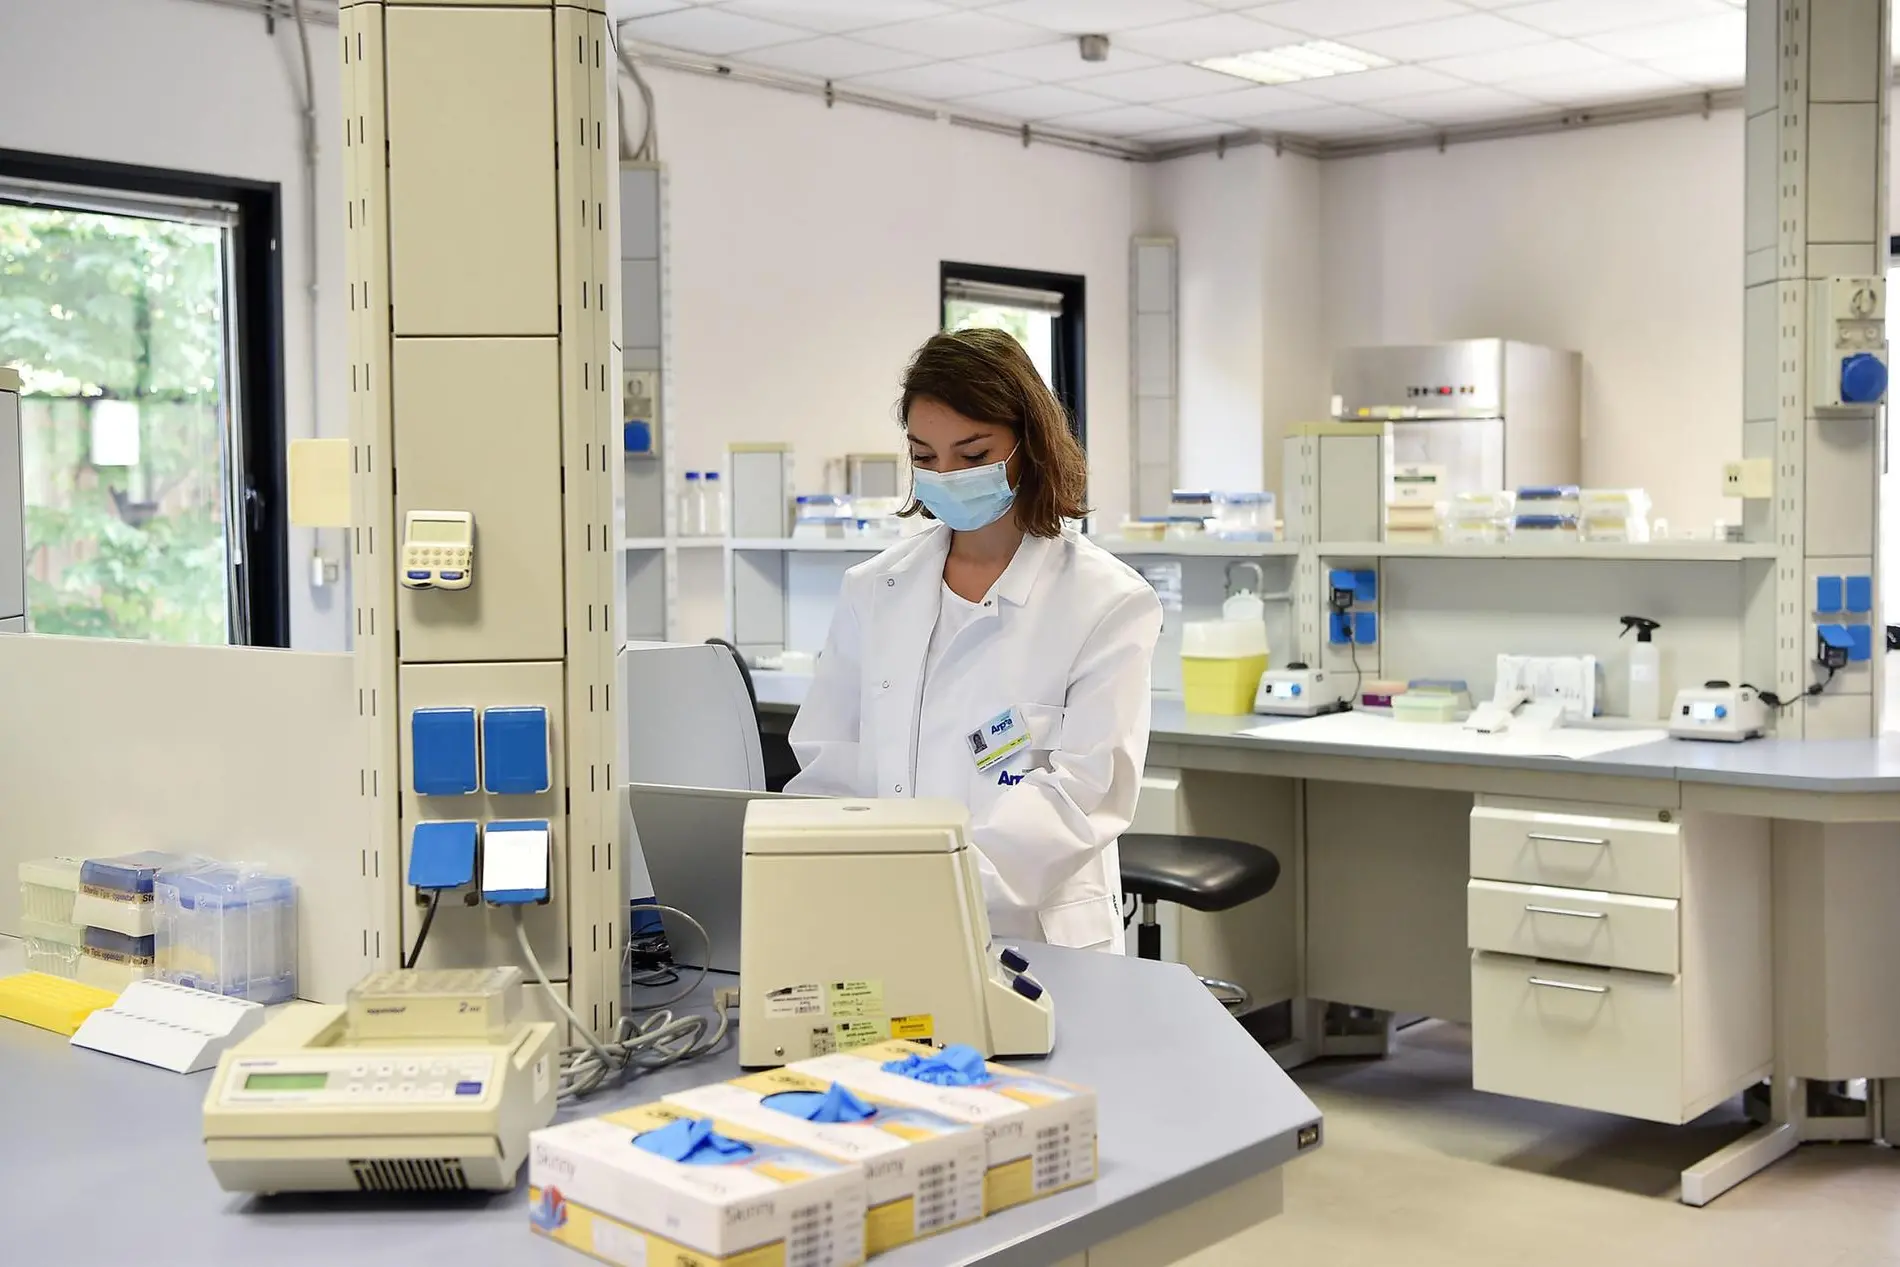 Il nuovo laboratorio regionale di biologia molecolare dell'Arpa per l’analisi dei tamponi Covid-19 inaugurato a La Loggia, Torino, 2 settembre 2020. ANSA/ALESSANDRO DI MARCO